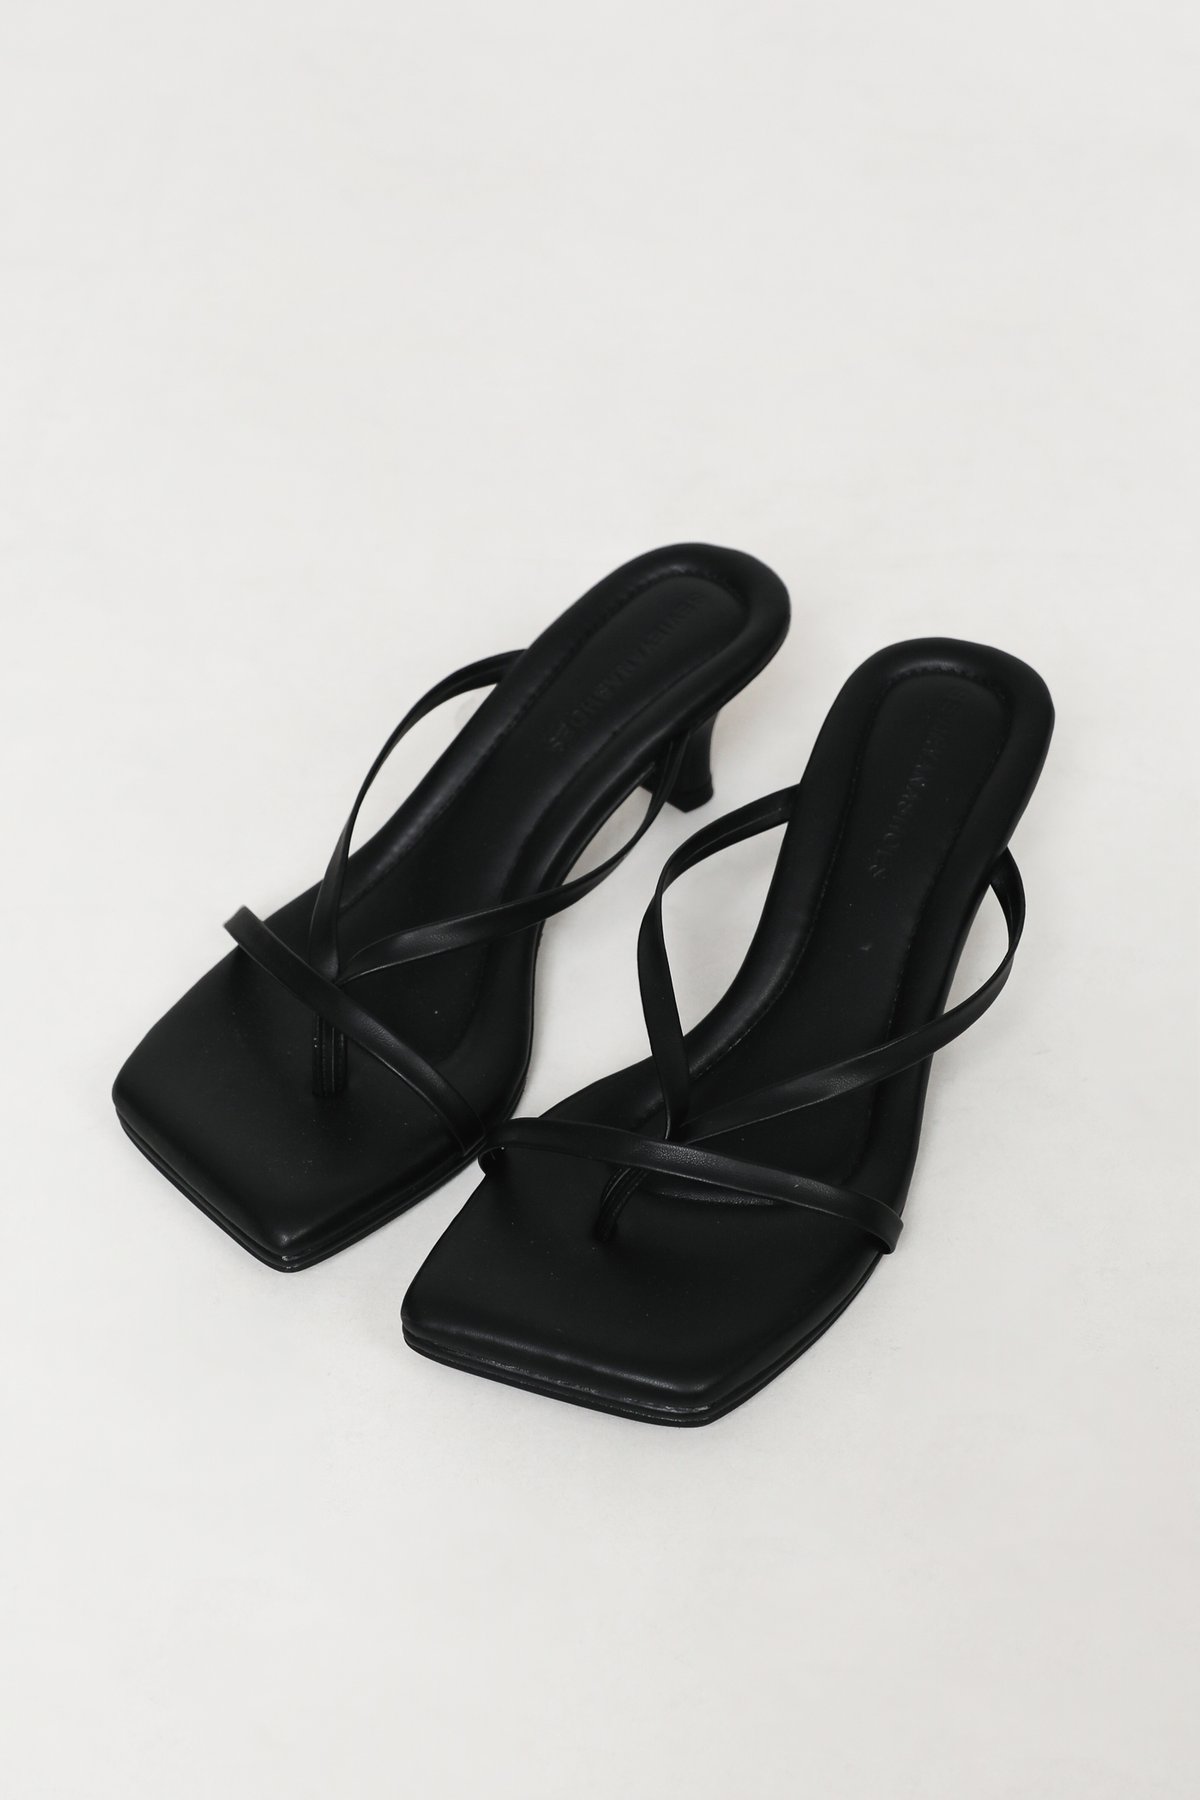 TTR x Sevieyanashoes Klaudia Heels (Black)